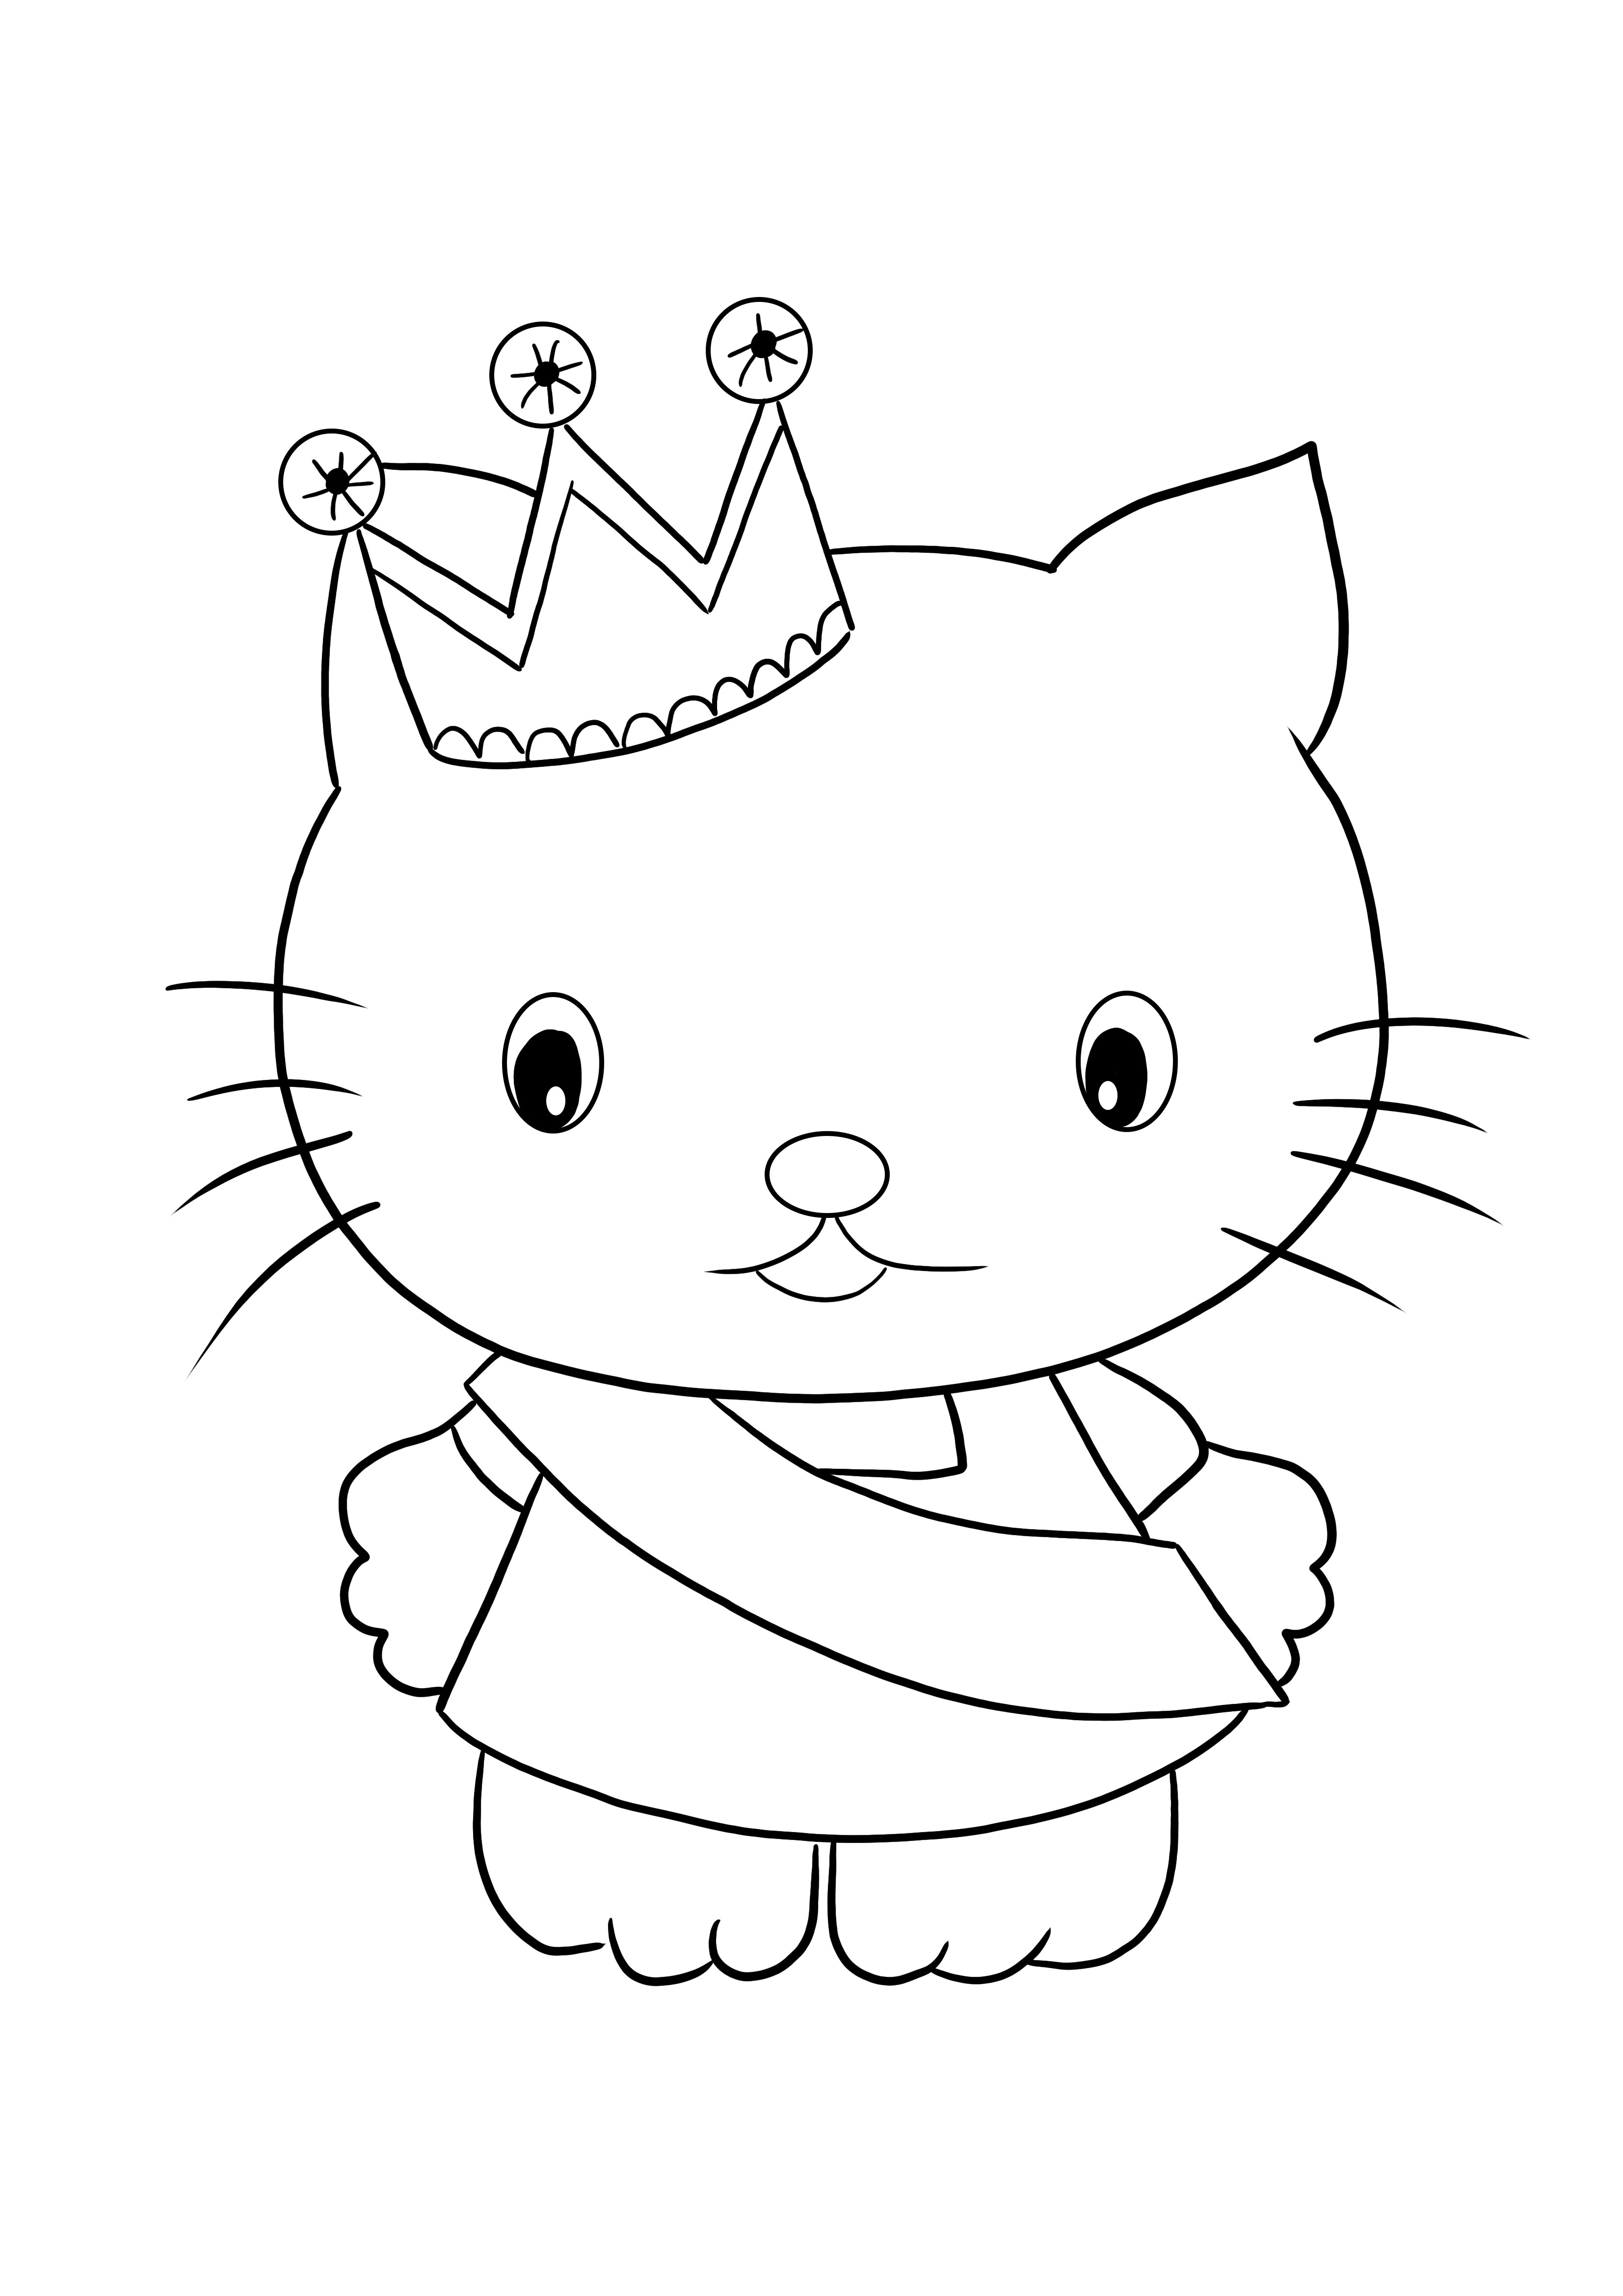 Impressão gratuita da folha de colorir Hello Kitty Princess para colorir e se divertir